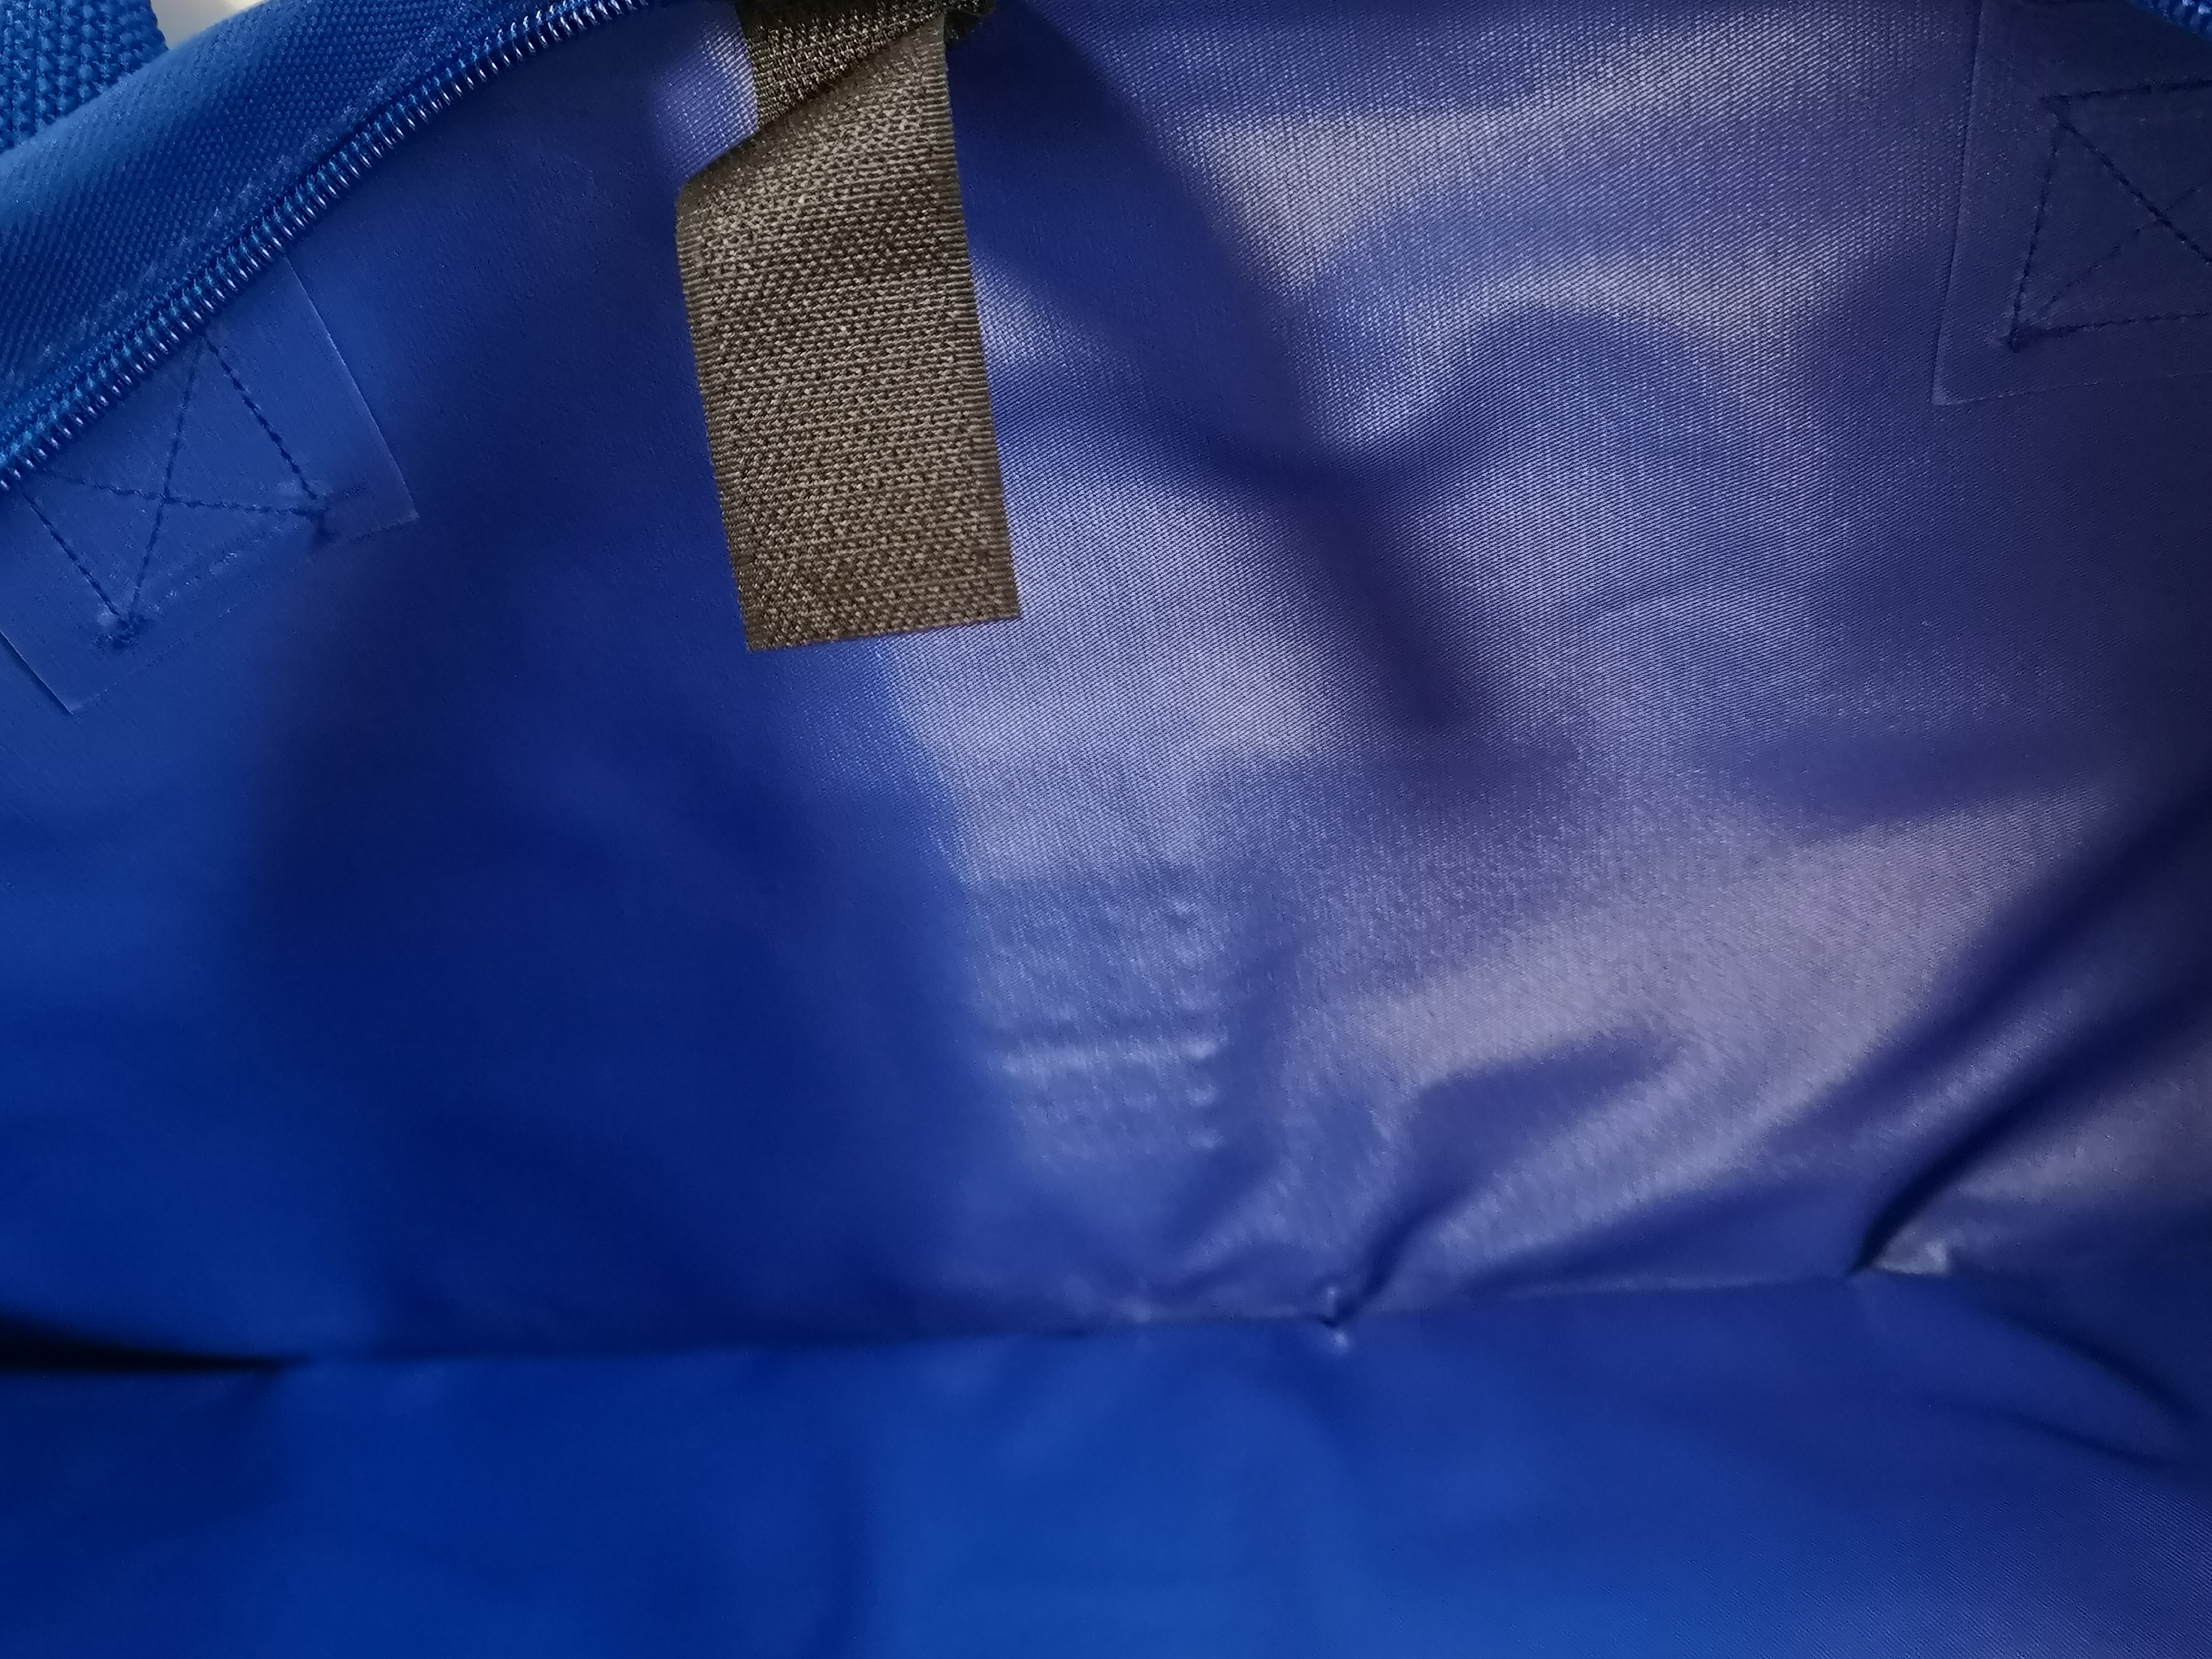 Blue Comfort Extra Stark Nylon Kennzeichentasche Zulassungstasche  Nummernschildtasche Schildertasche